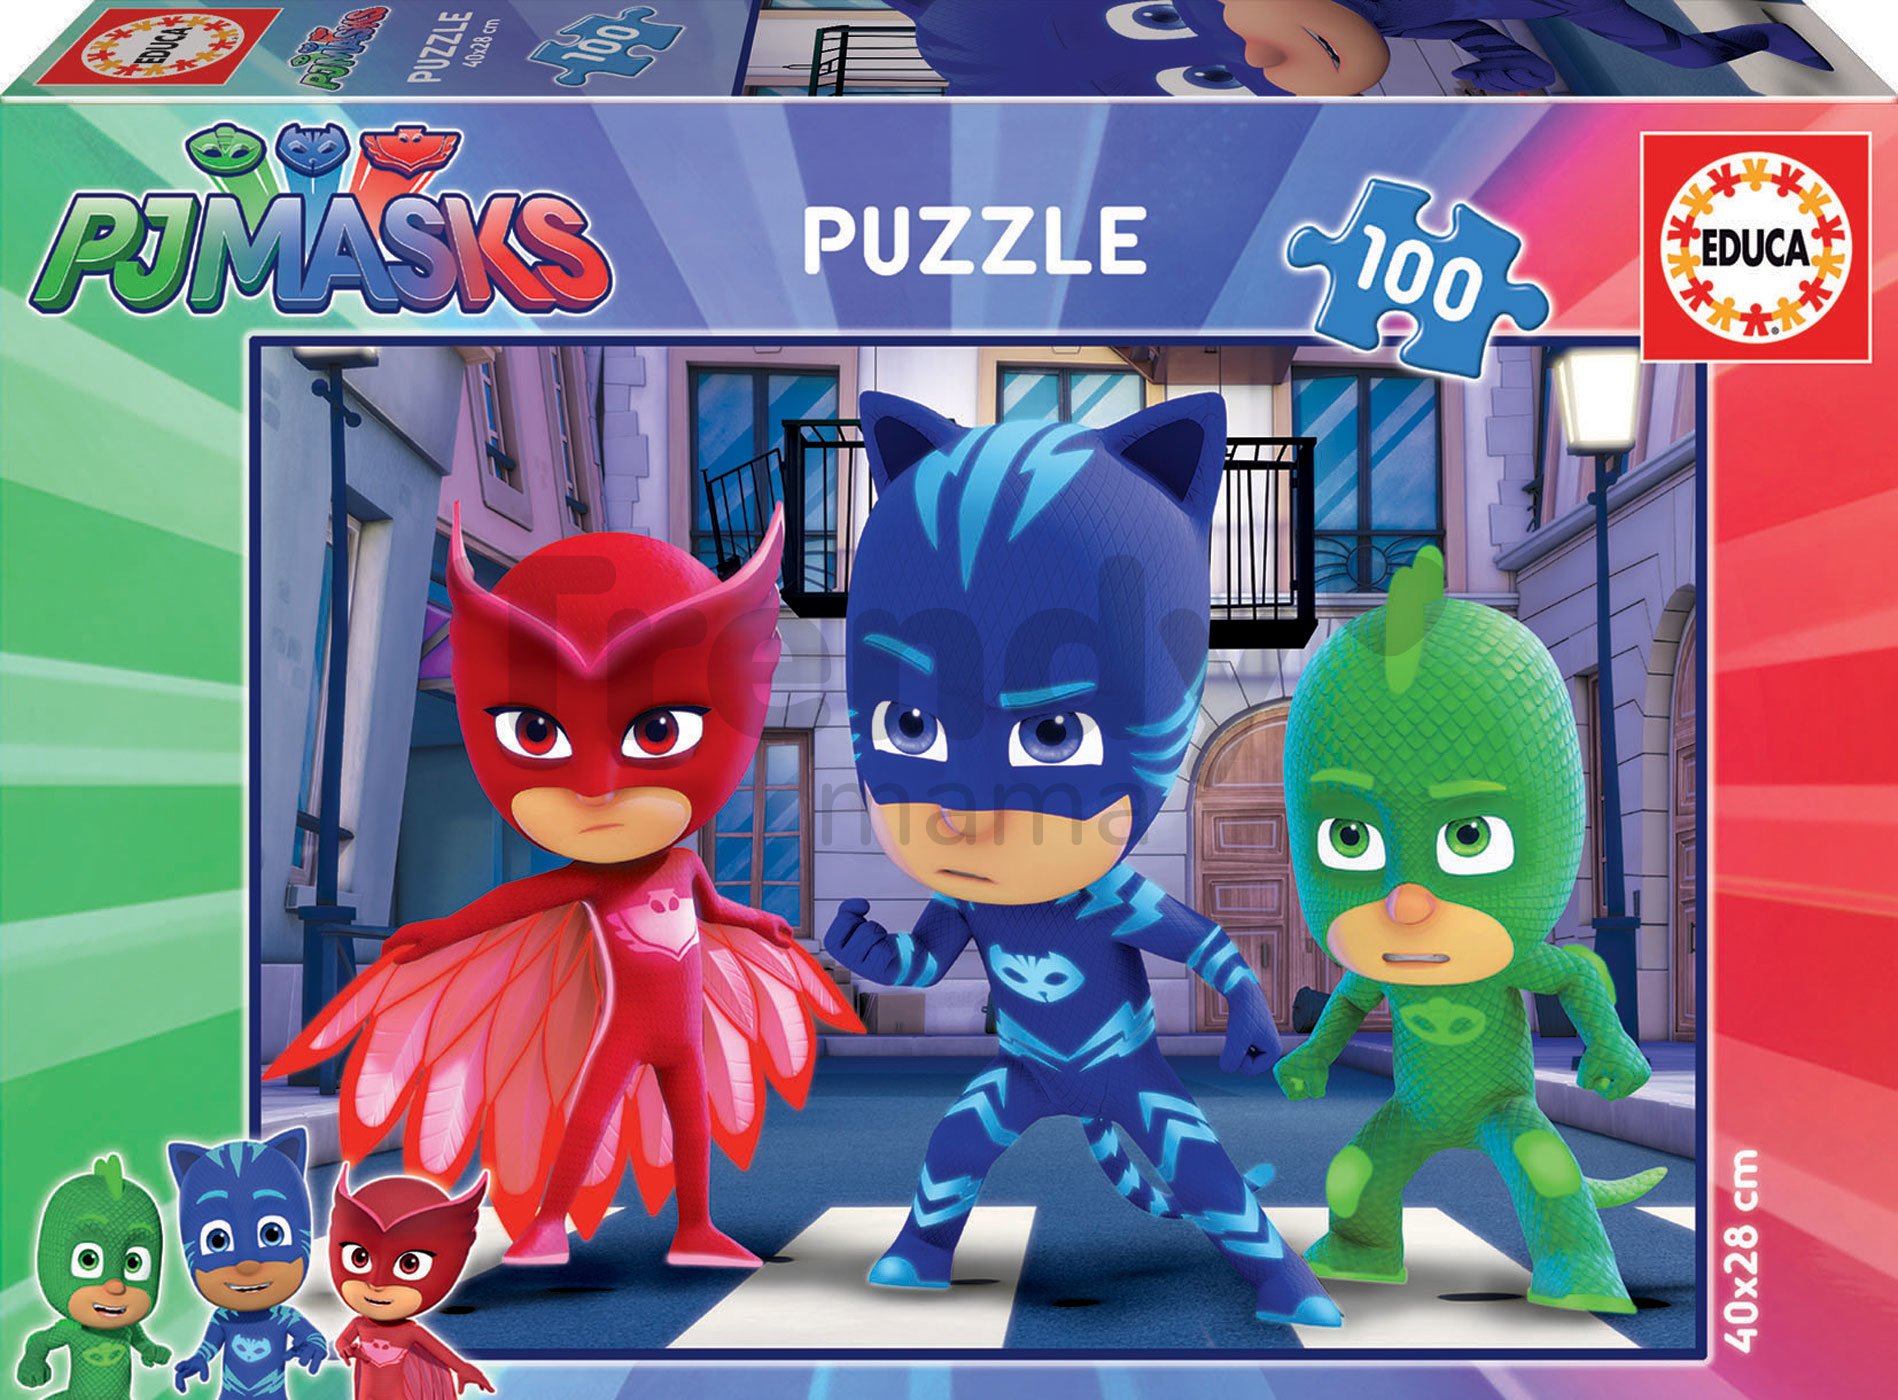 Intrattenimento Giochi e rompicapo Puzzle Educa Puzzle Puzzle pjmasks 